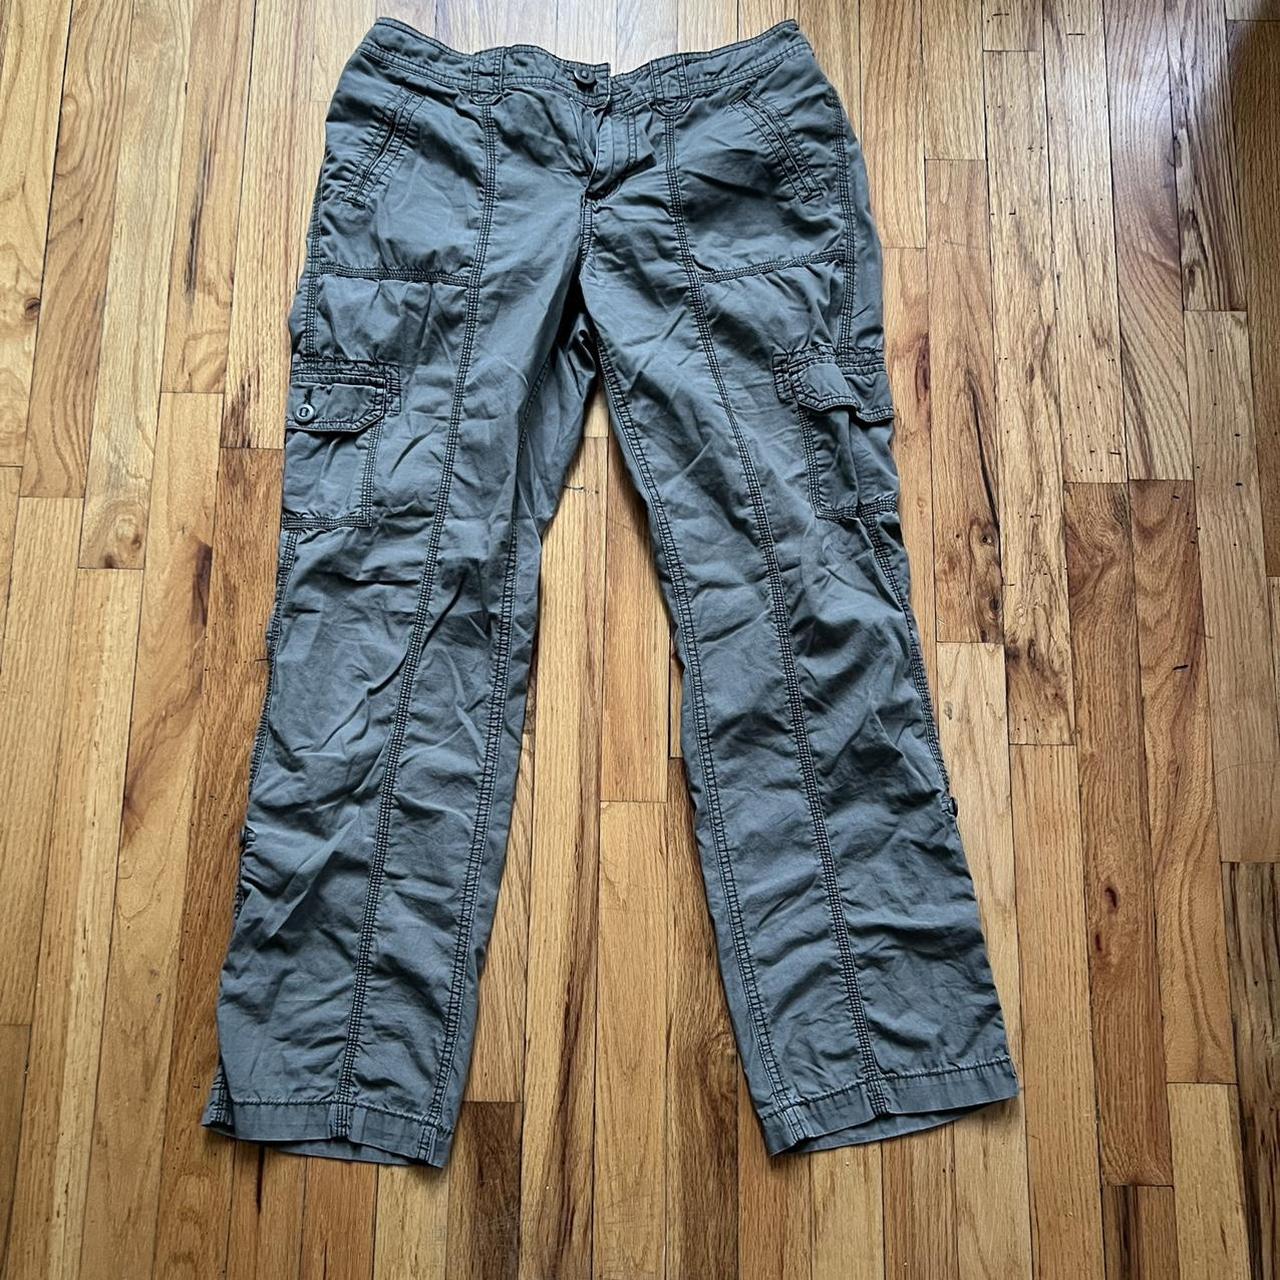 St. John’s Bat green cargo pants Size 12 / in great... - Depop